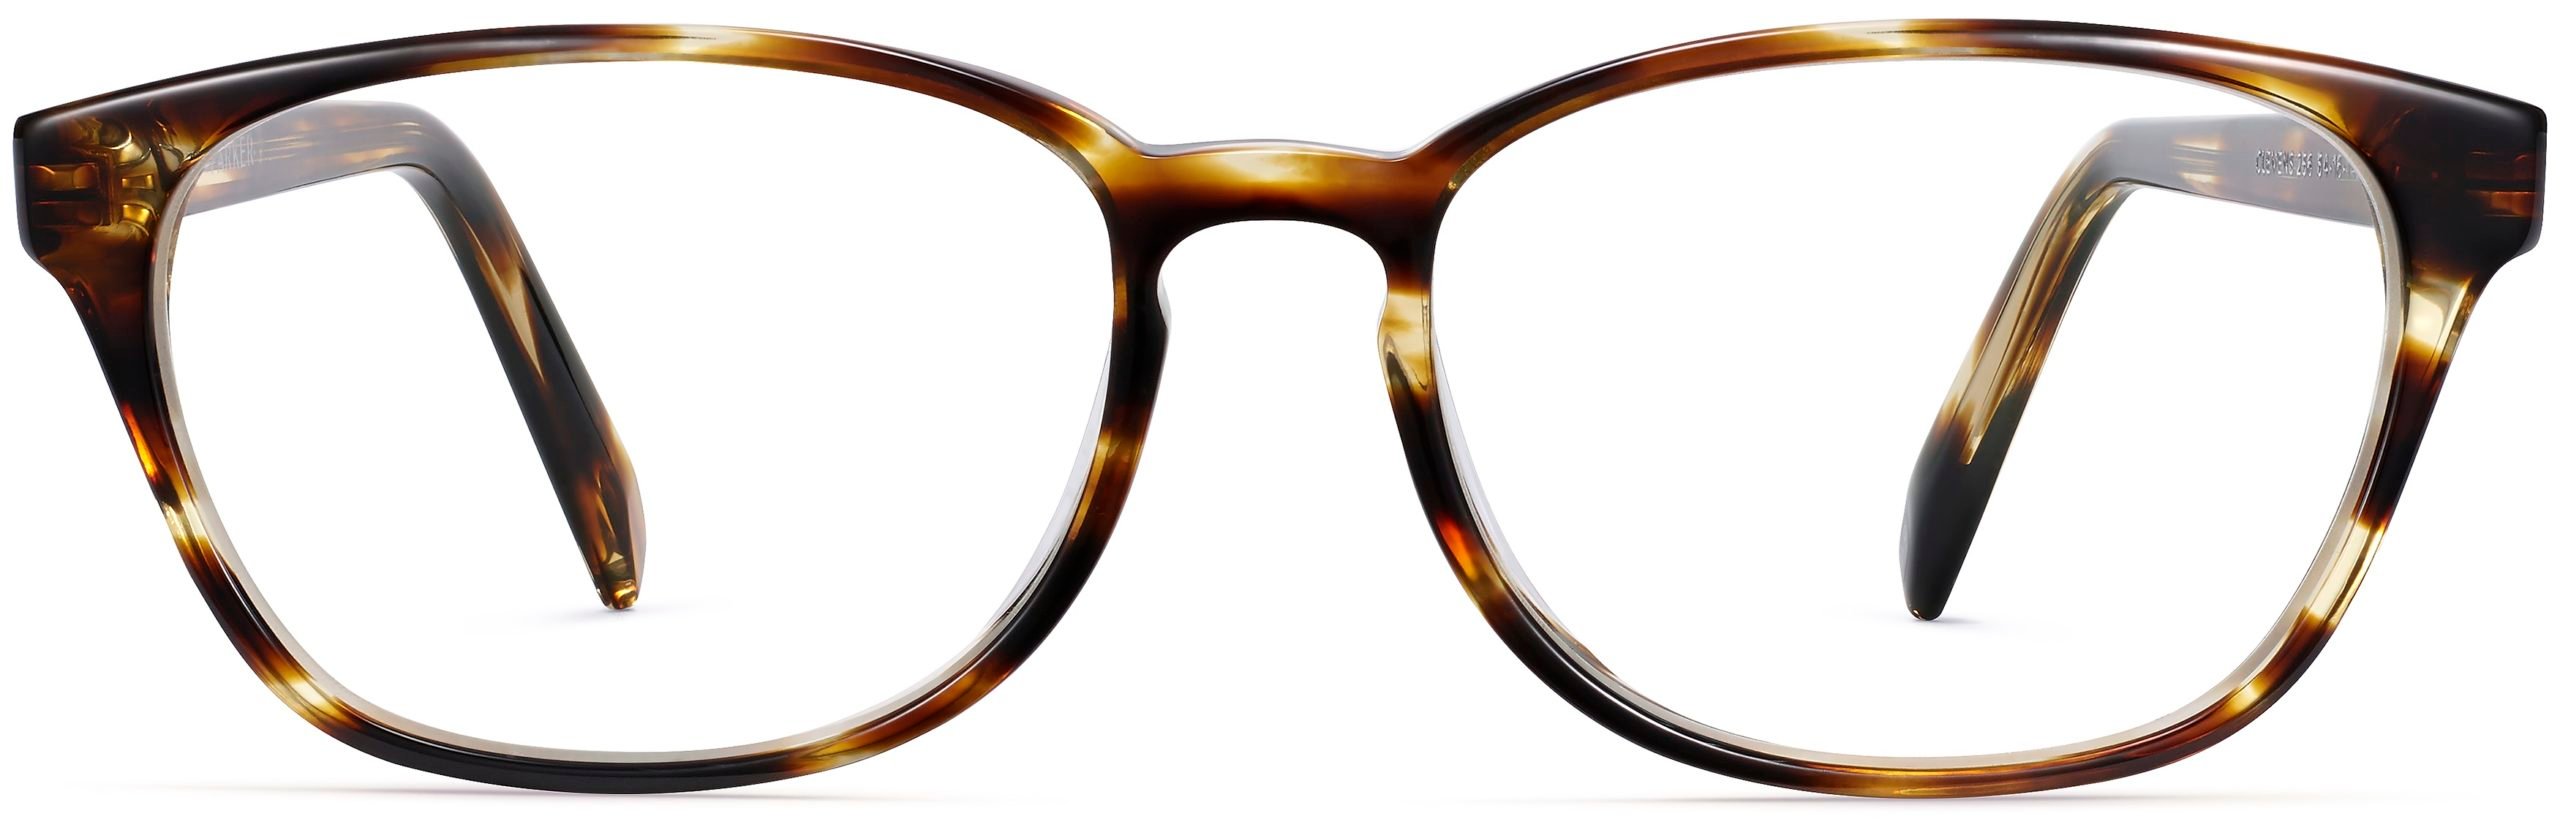 Clemens glasses in striped sassafras